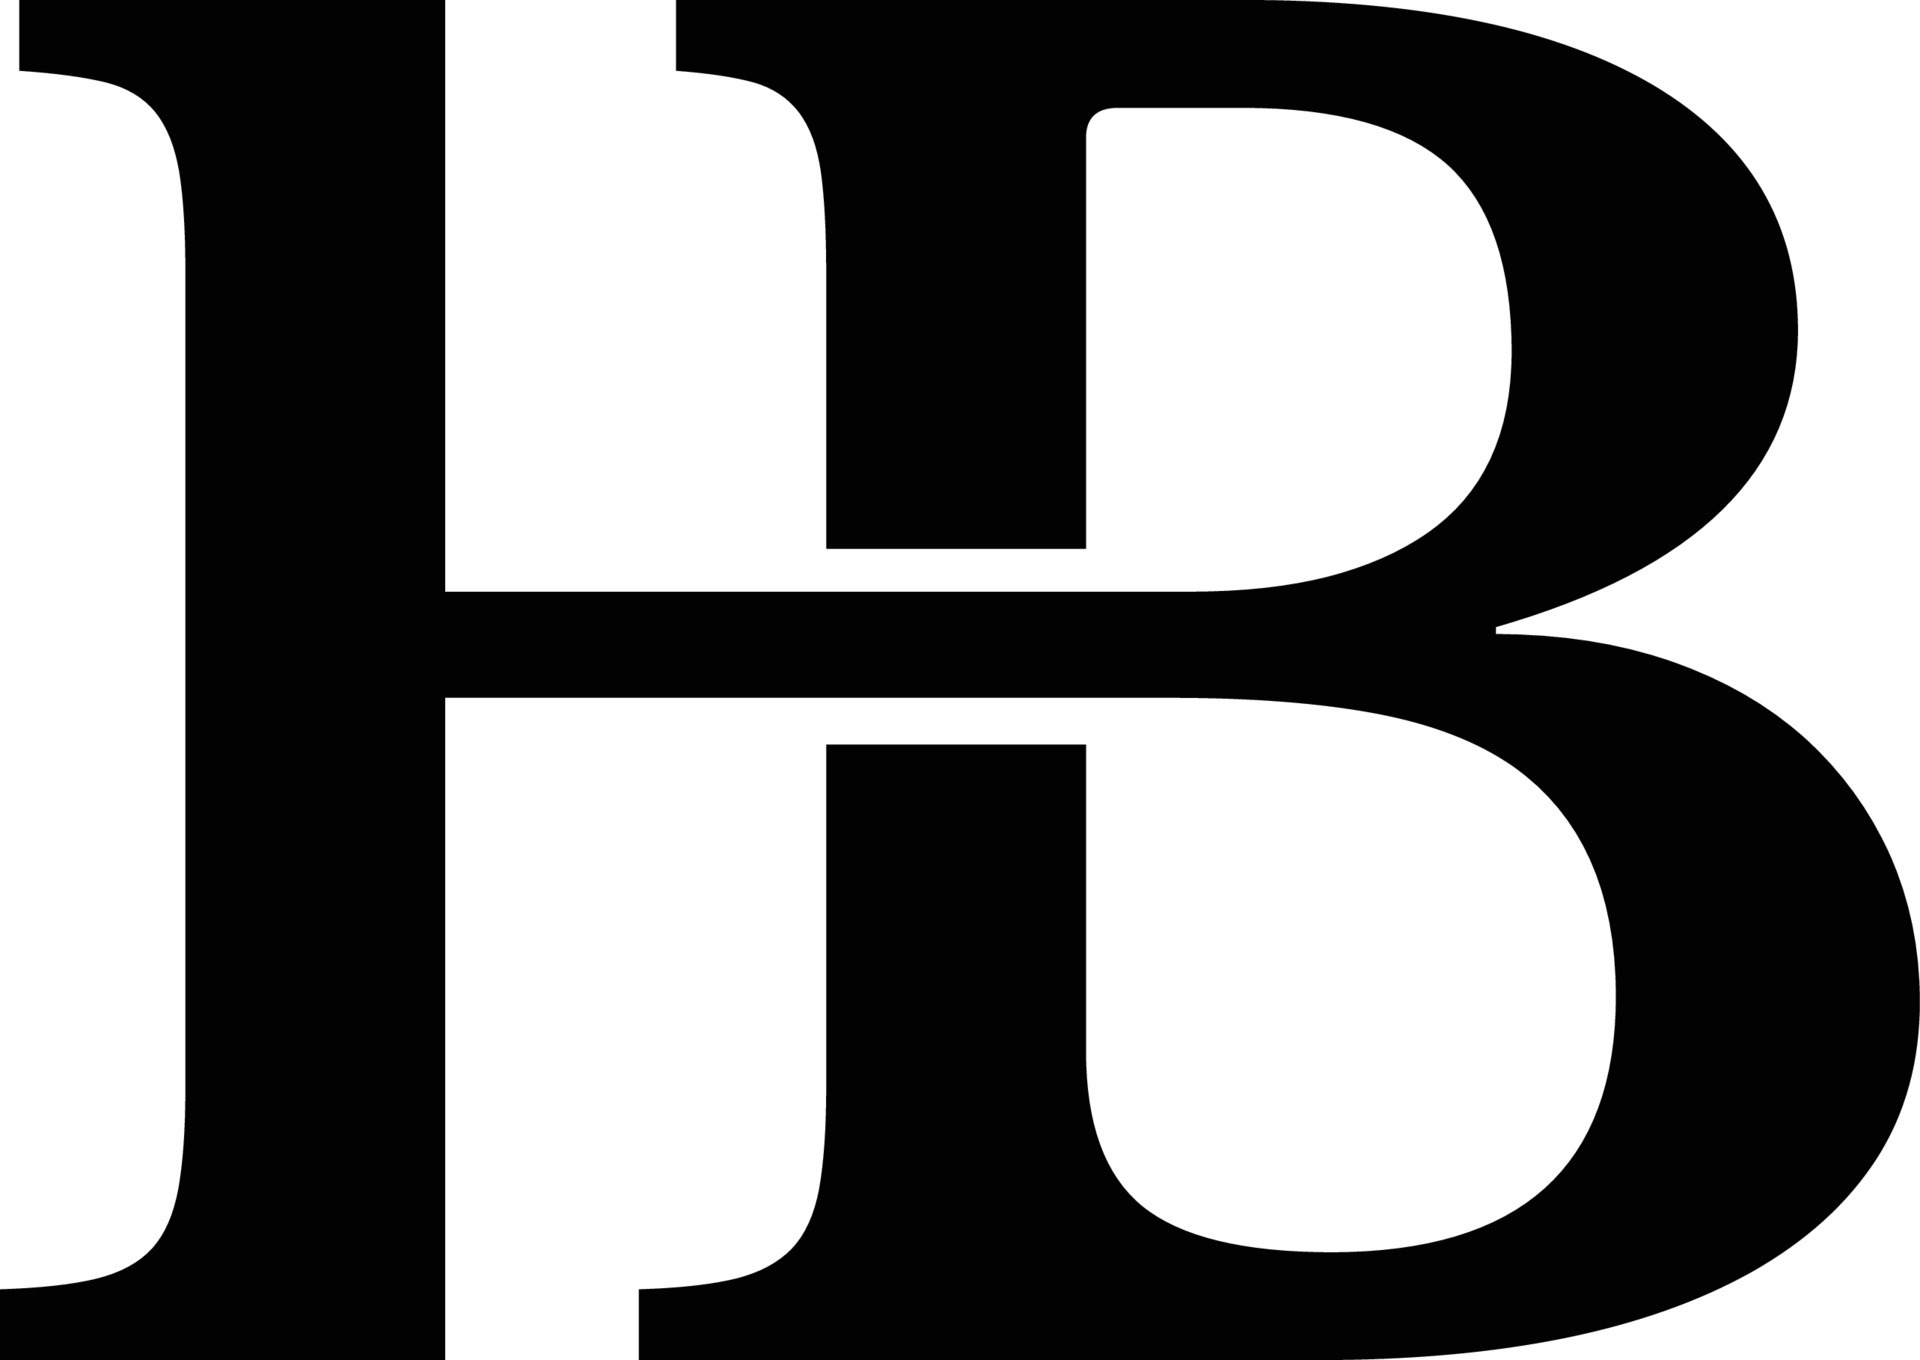 HB letter luxury logo 22013721 Vector Art at Vecteezy